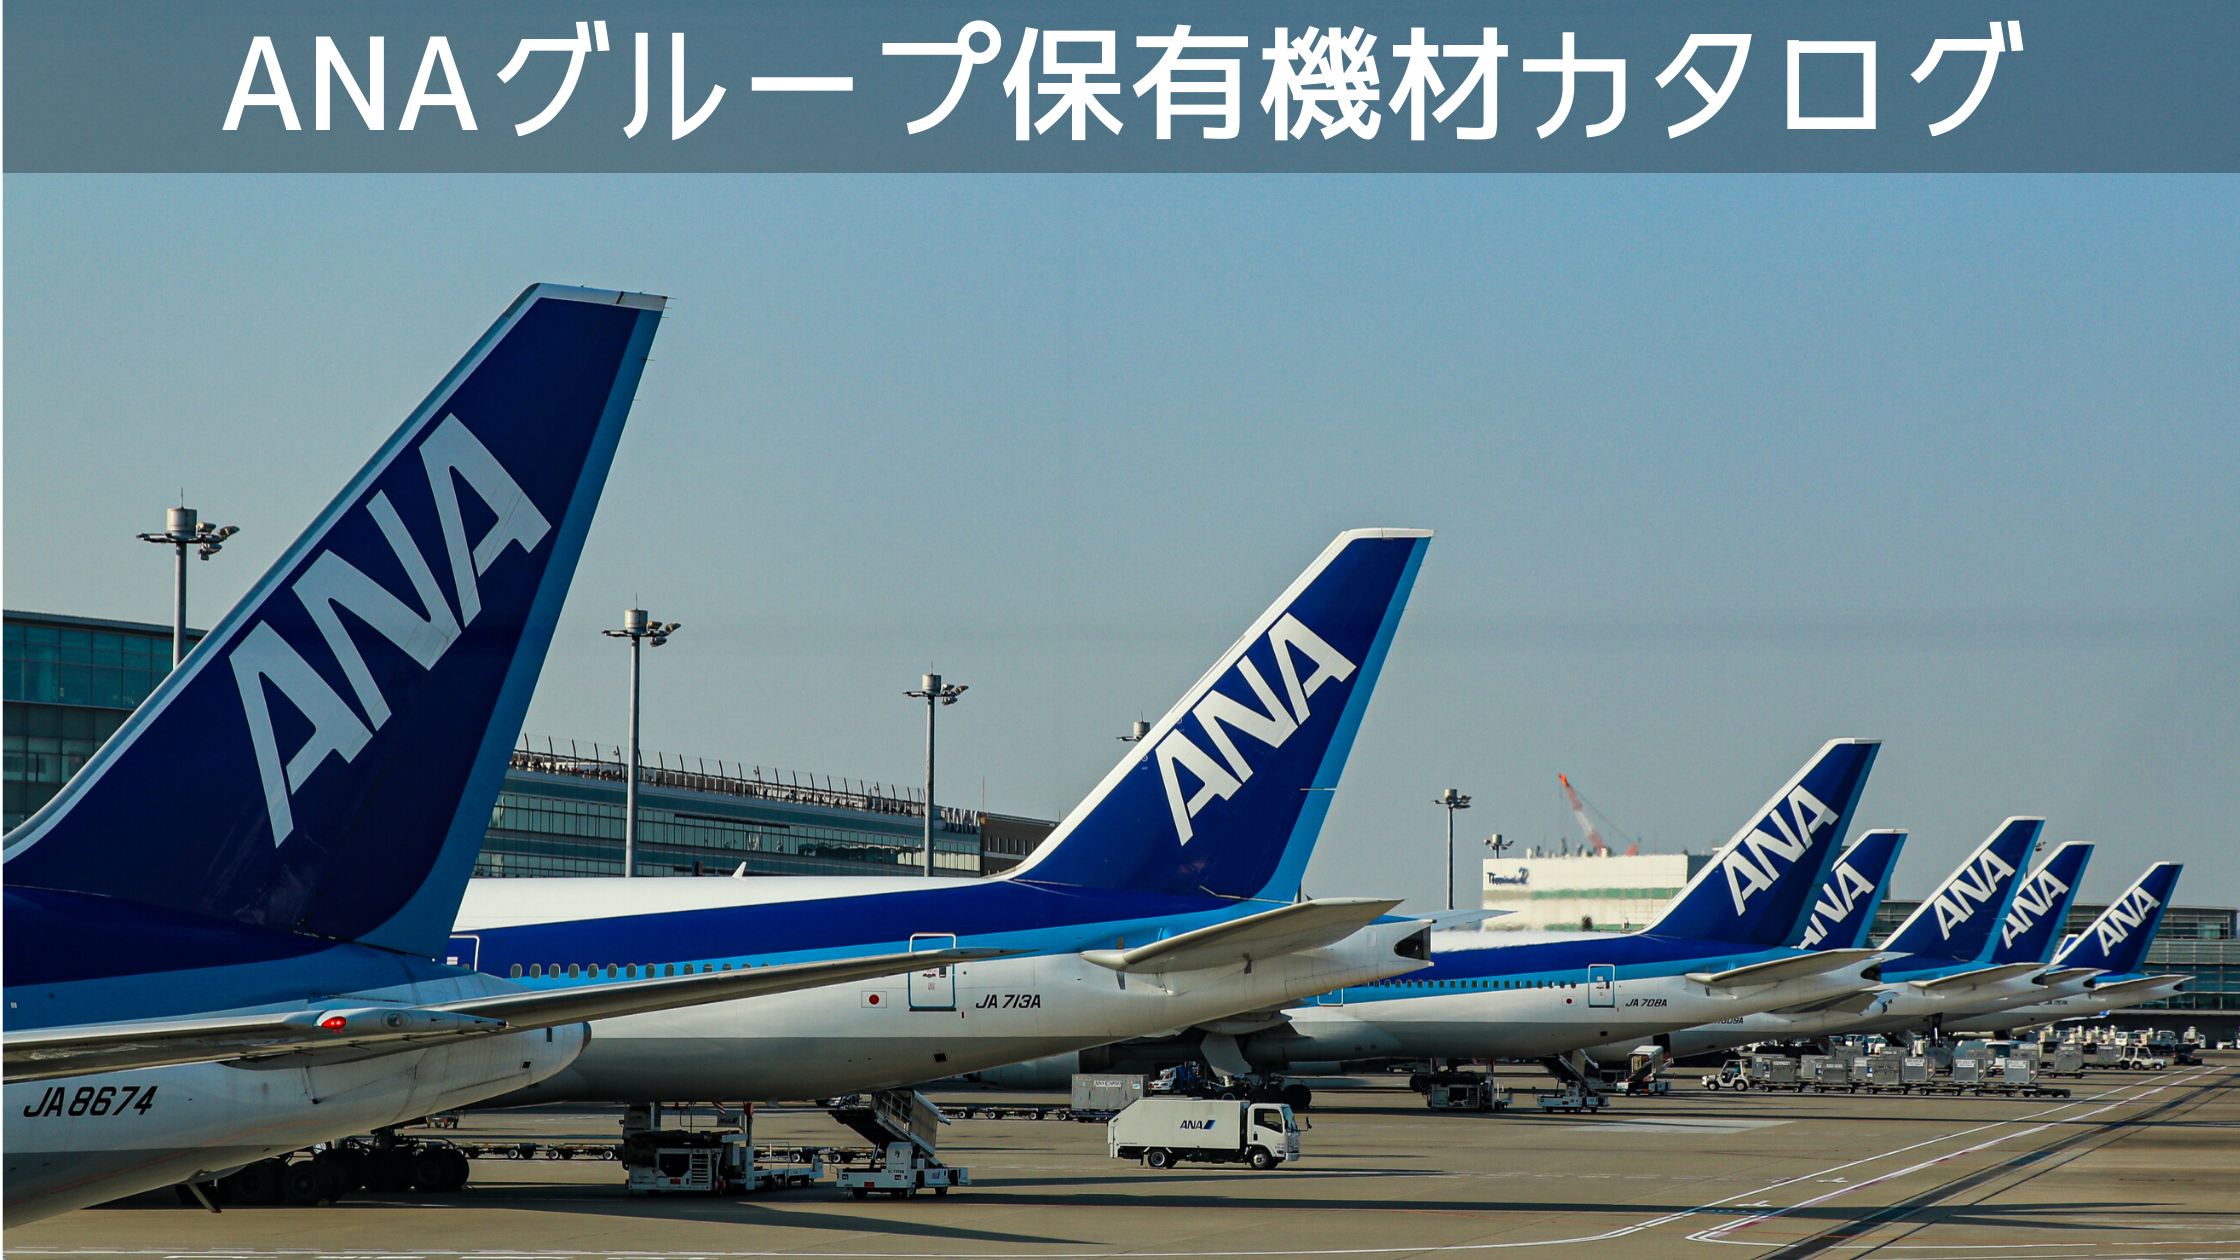 21年8月最新版 全18種類 全日本空輸 Ana グループ保有機材フリートカタログ シテイリョウコウ